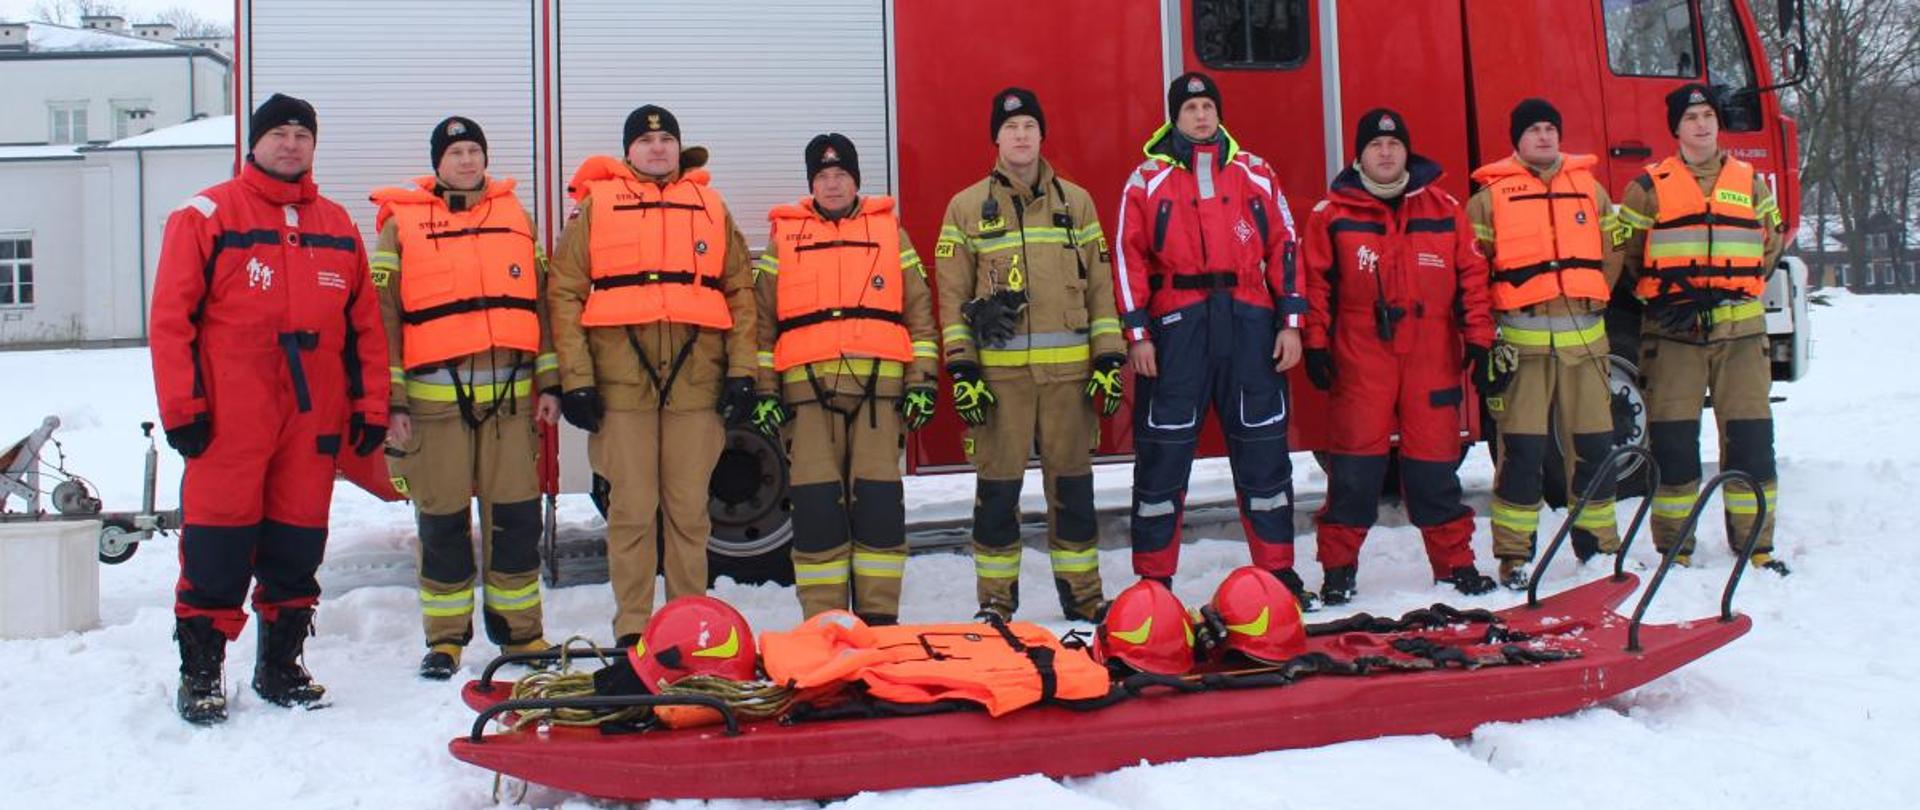 Pokaz ratownictwa wodno-lodowego w ramach akcji „Bezpieczne ferie” 18.01.2024 r. - na zdjęciu członkowie grupy stoją przed samochodem na śniegu.